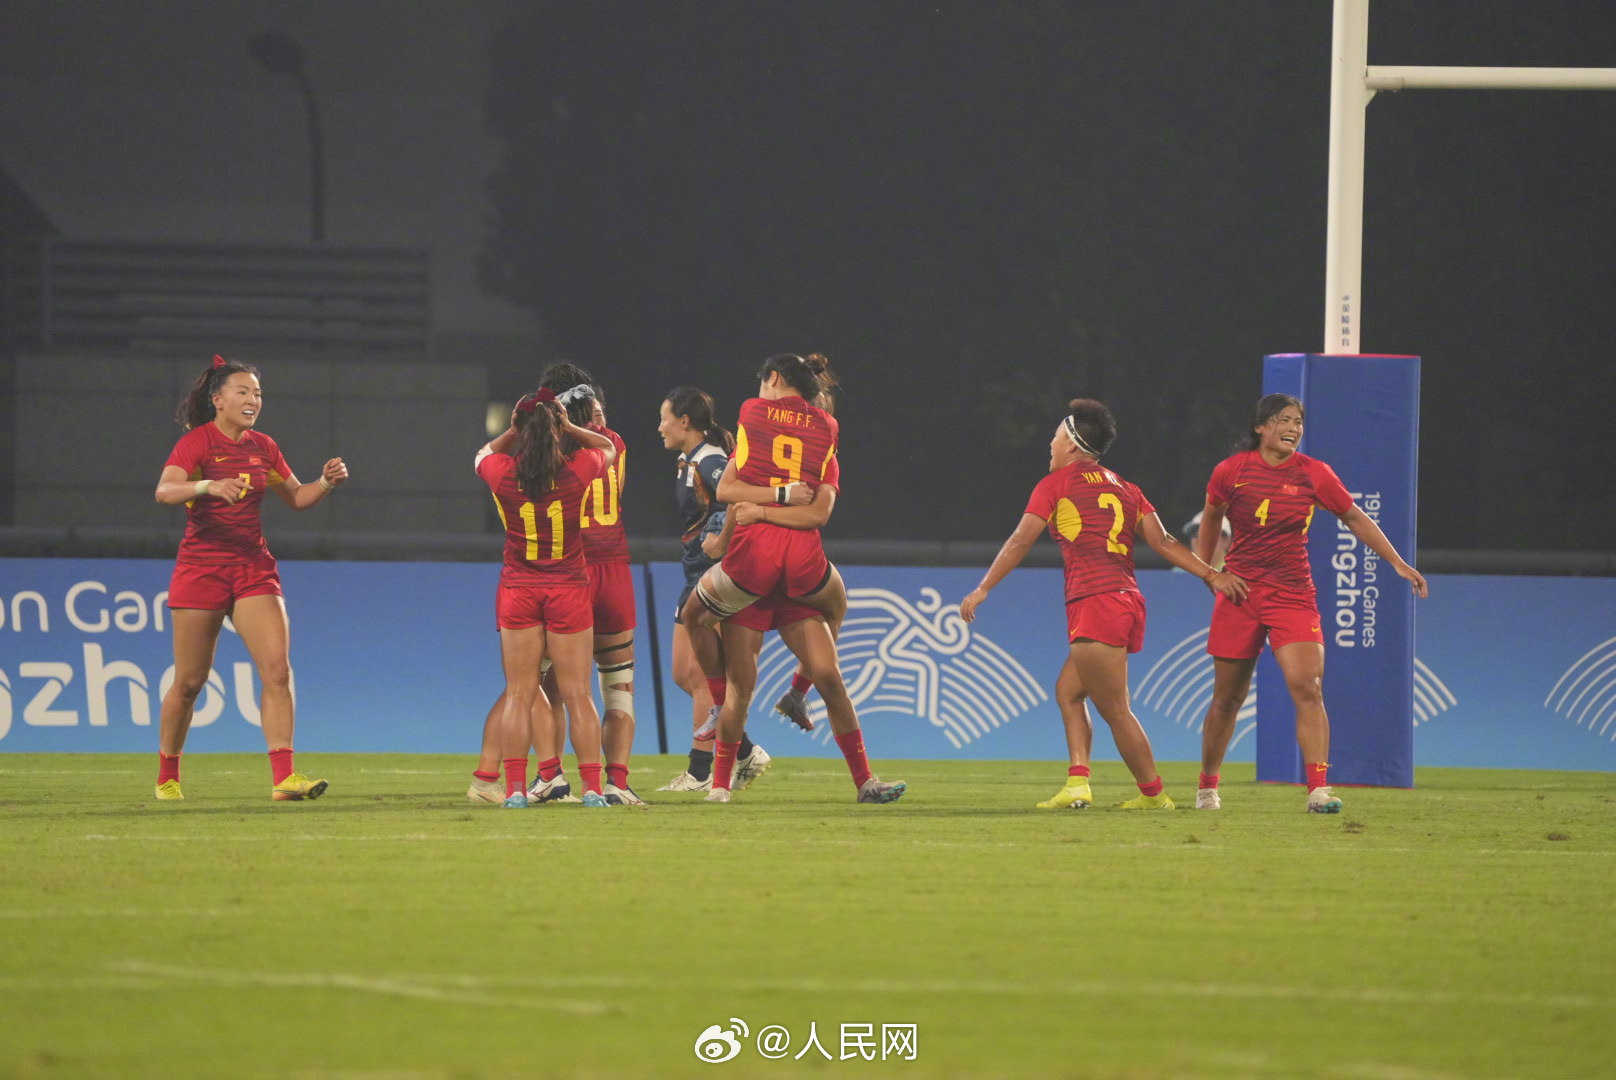 杭州アジア大会7人制ラグビー女子で中国が日本を破って金メダル